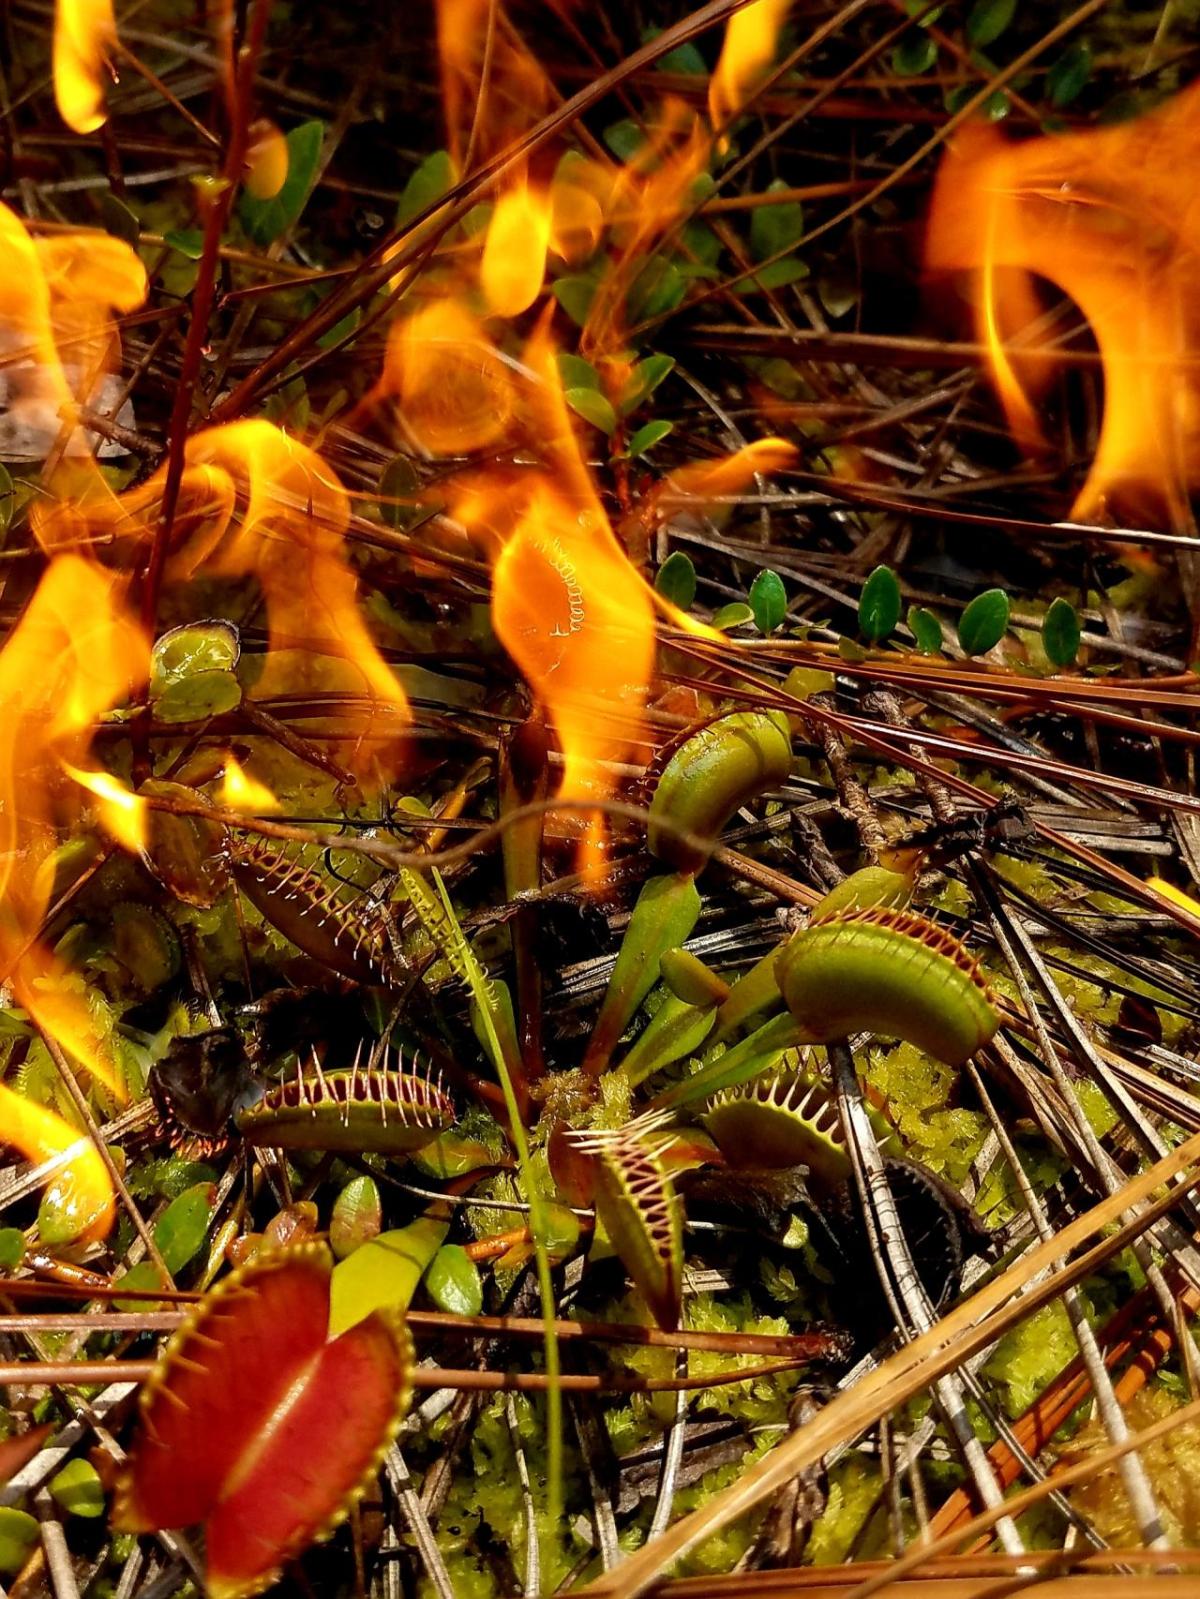 venus flytrap near fire